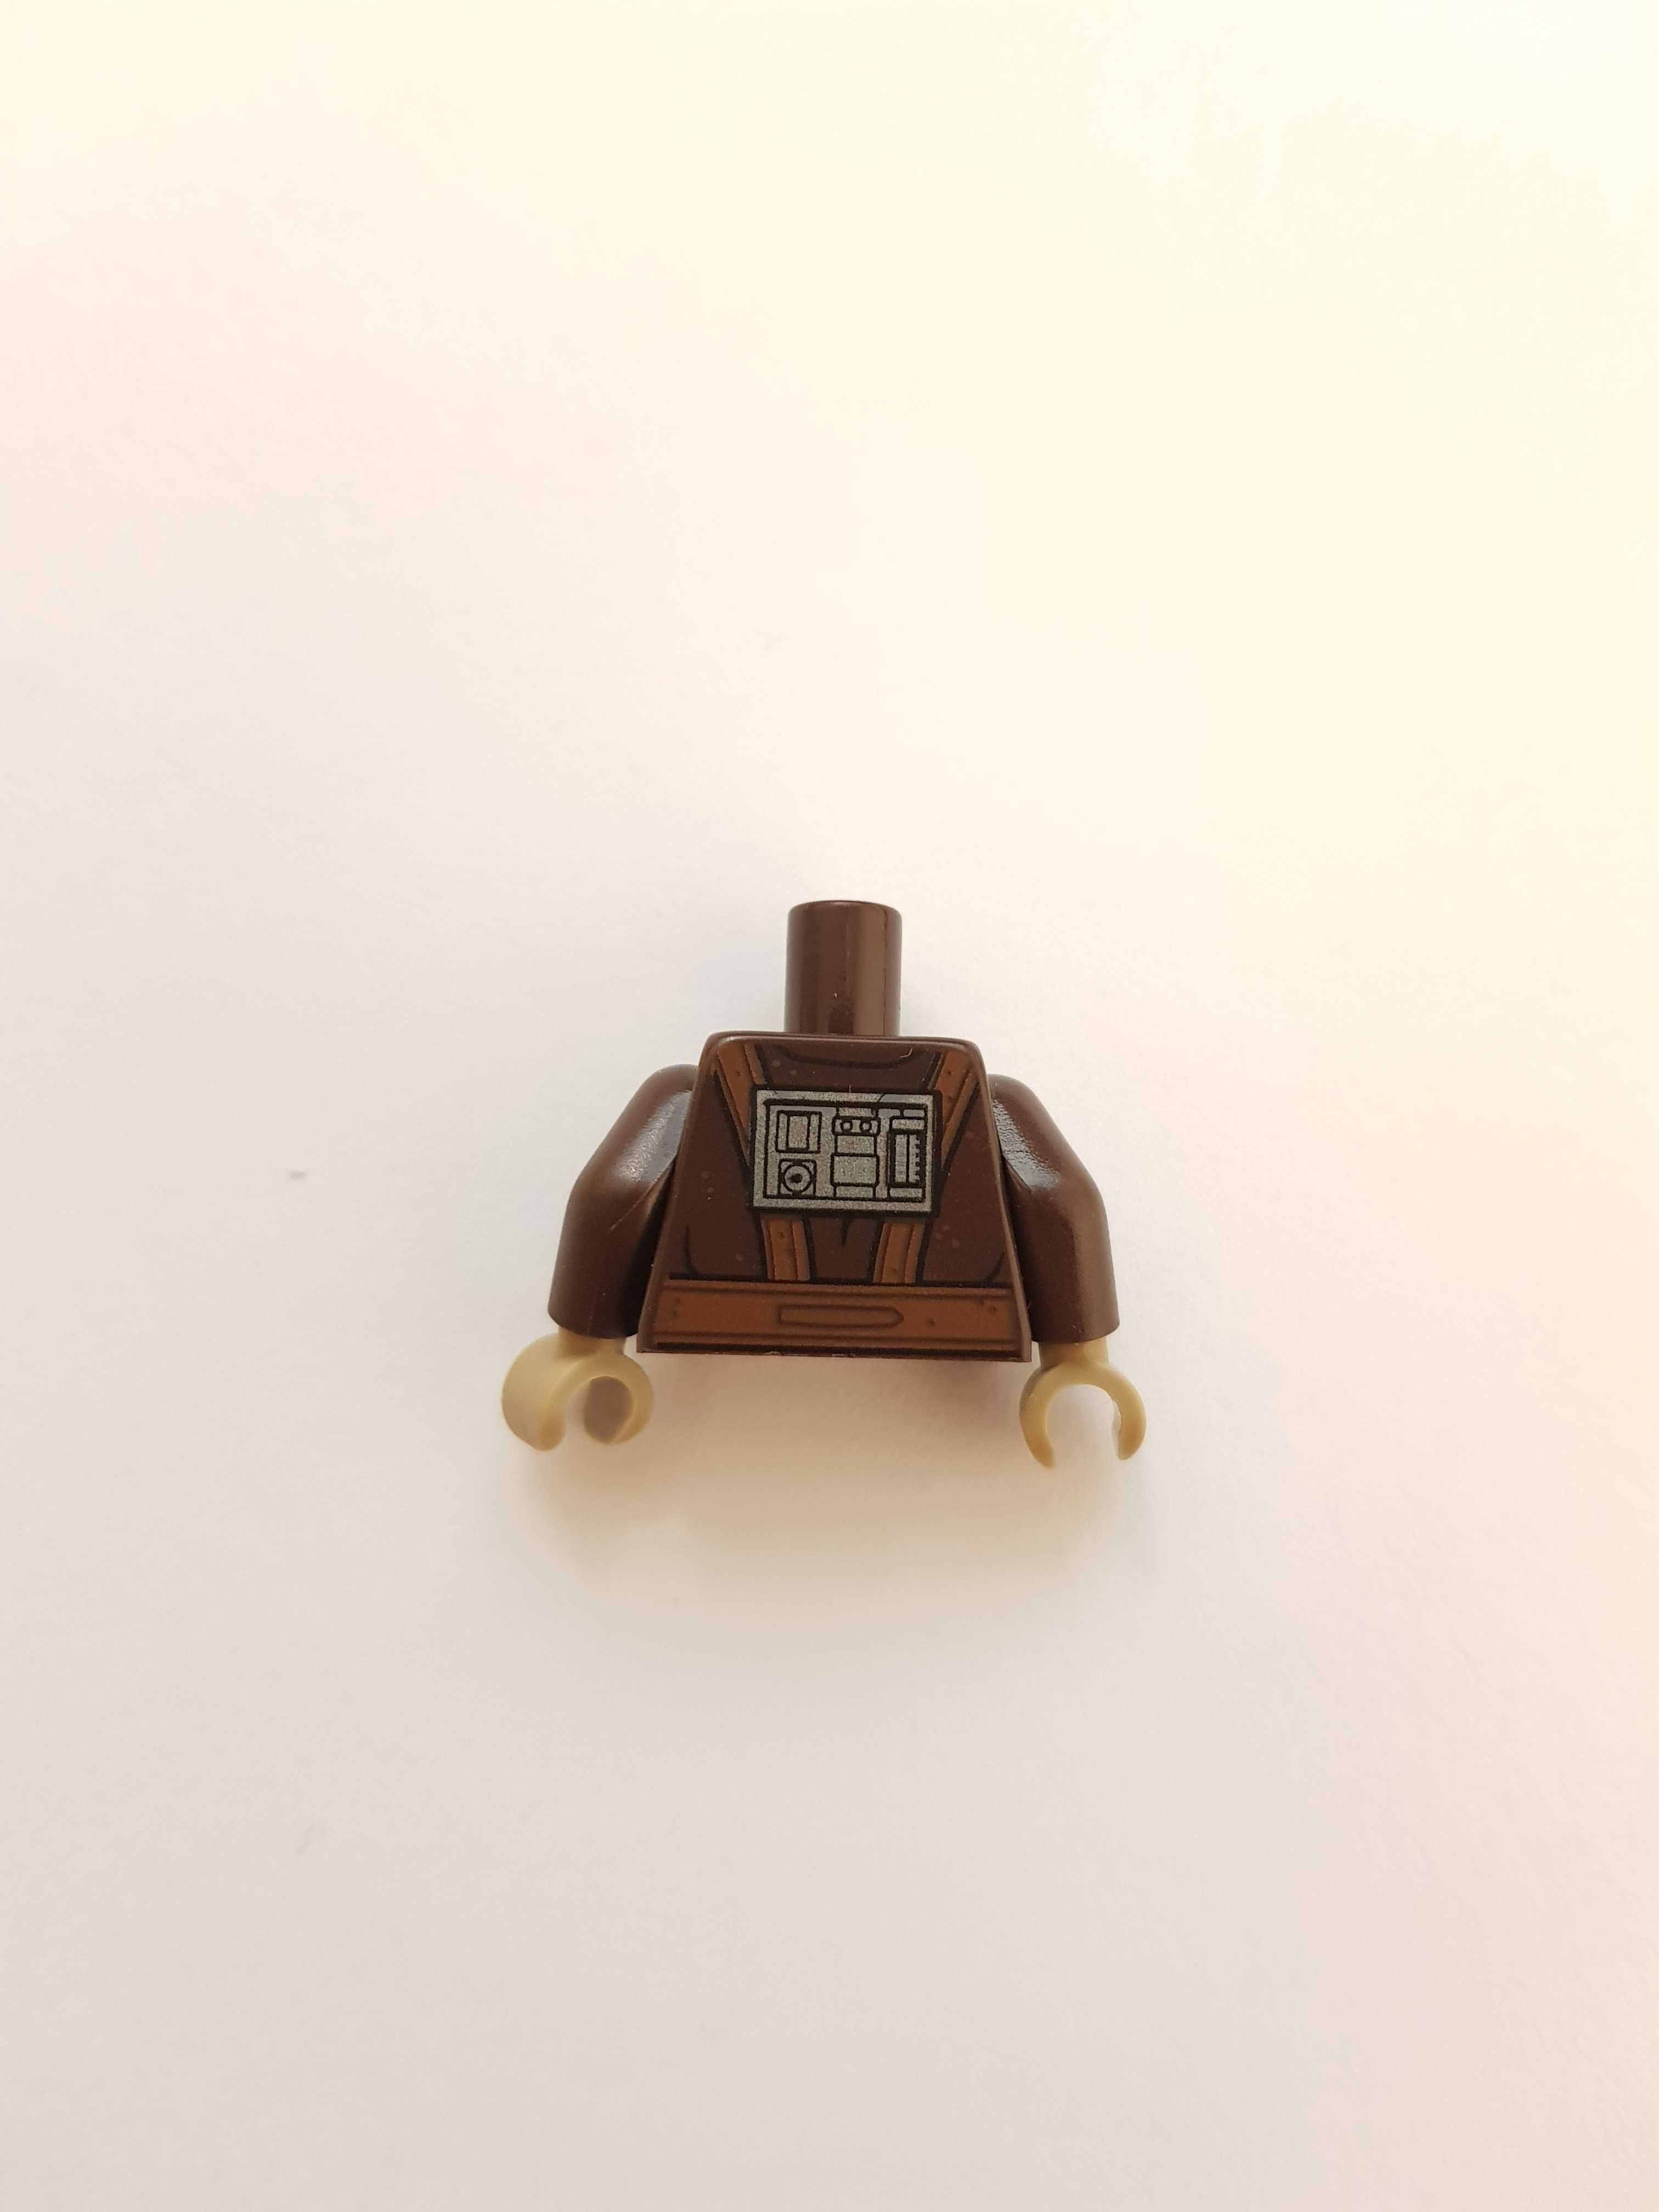 Lego Star Wars 973pb3507c01 tors Zuckuss